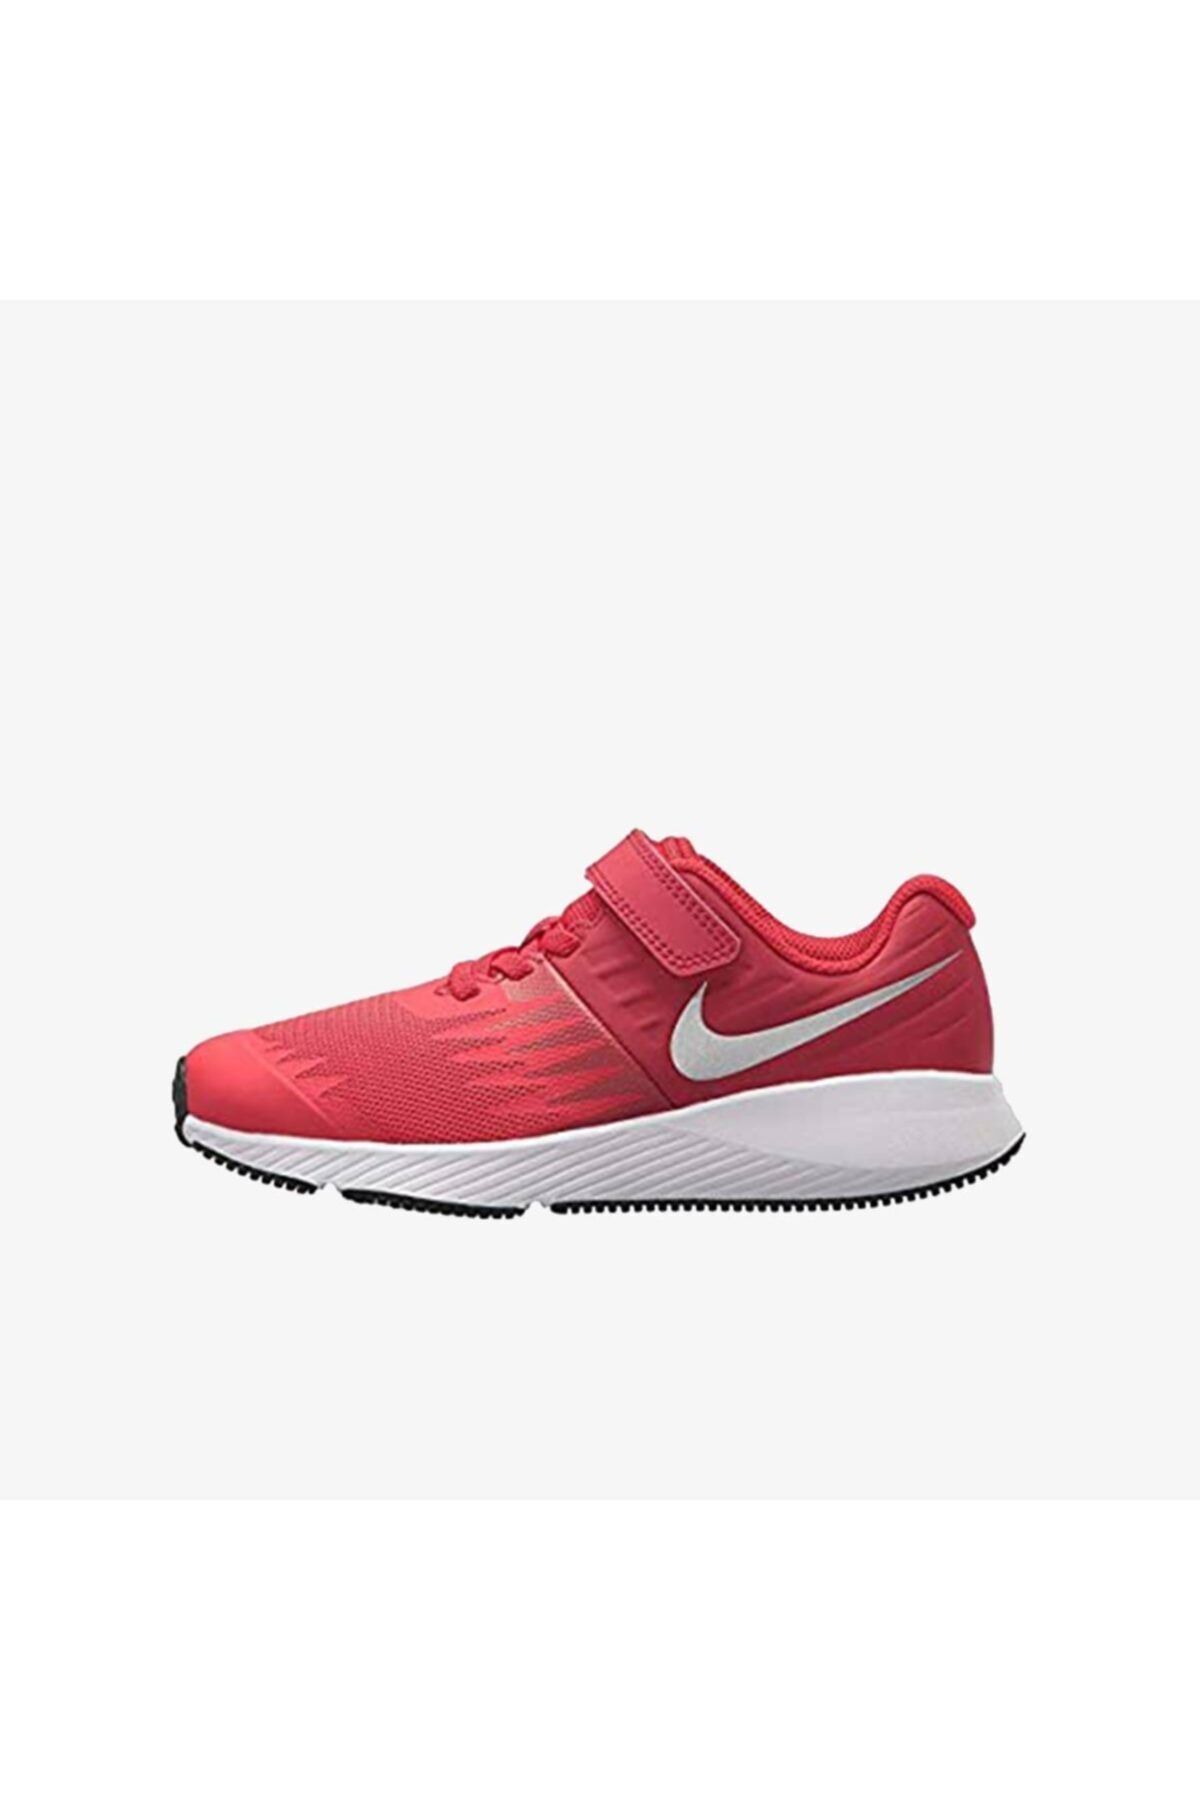 Nike 921443-600 Star Runner (psv) Çocuk Yürüyüş Koşu Ayakkabı